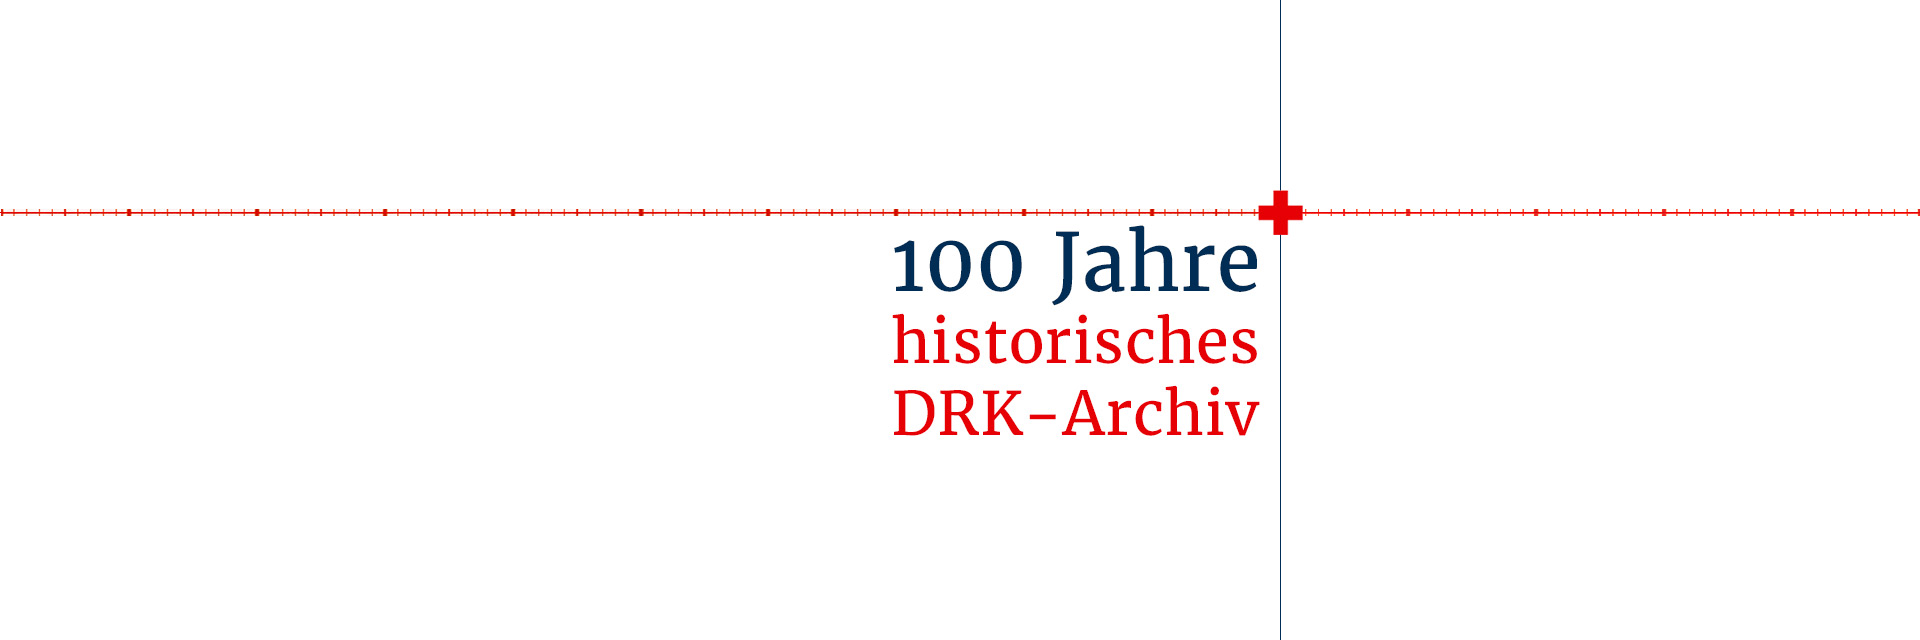 Grafik zum Jubiläum des historischen DRK-Archivs